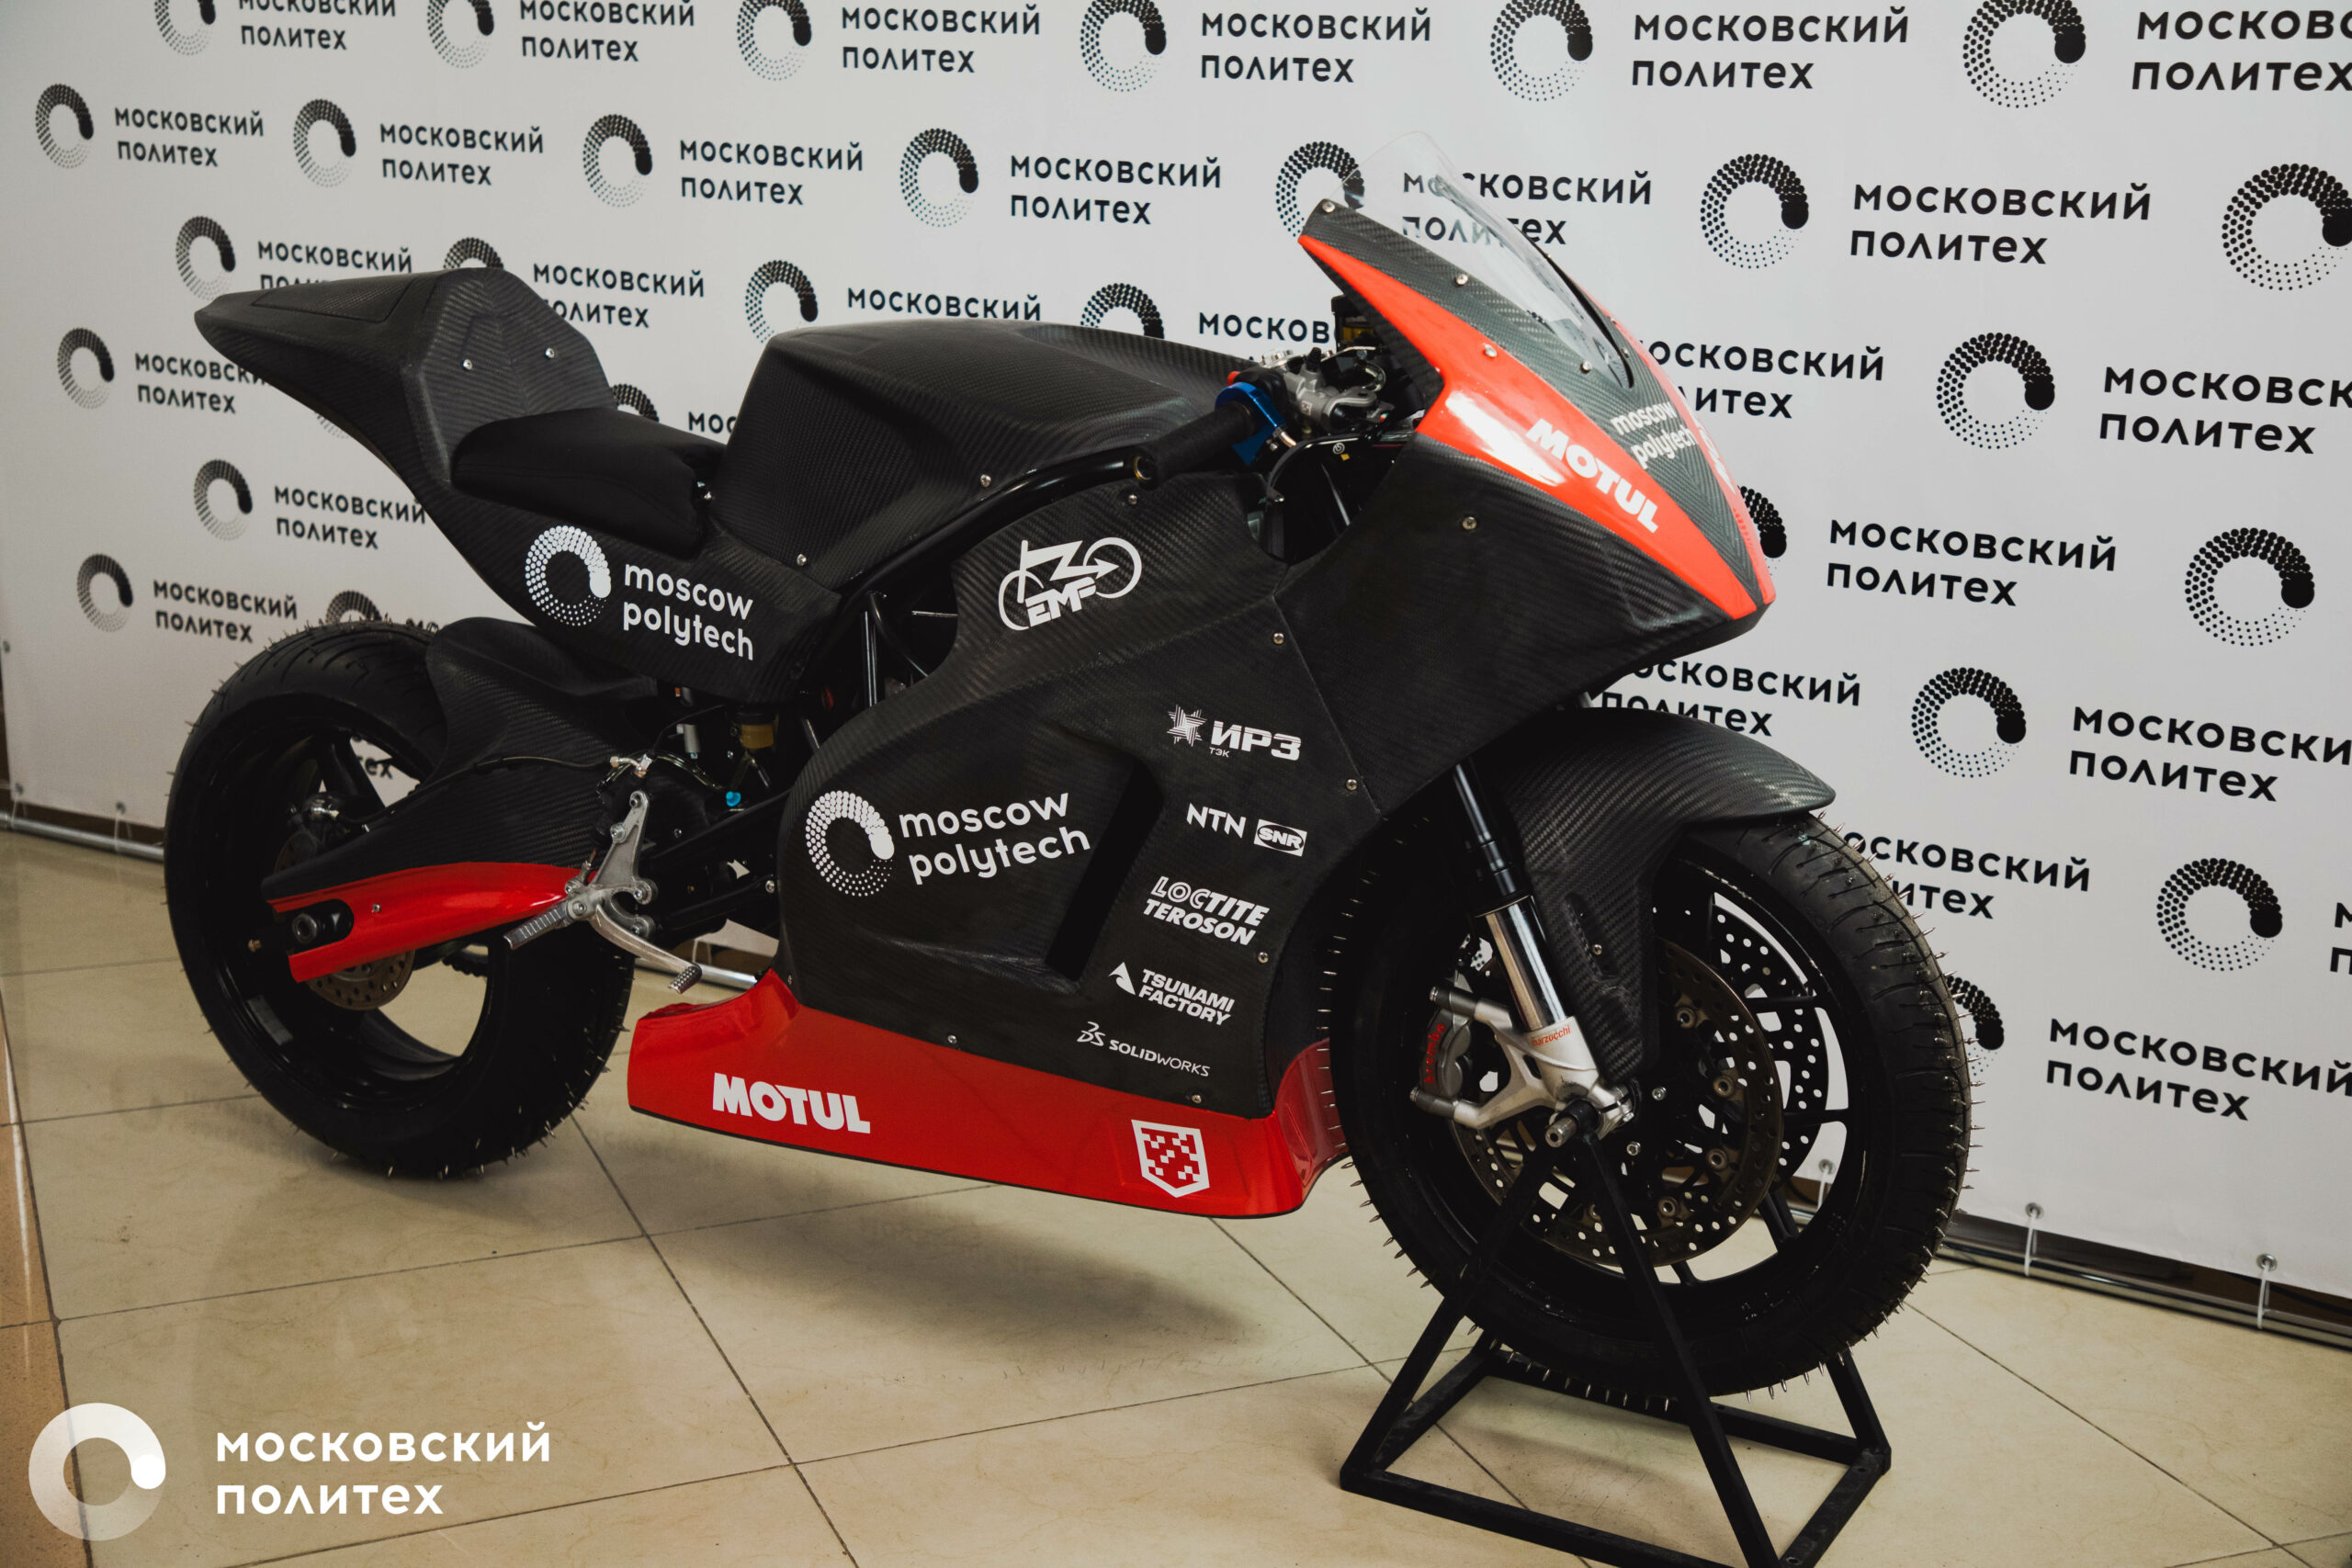 Московский Политех презентовал новый элекромотоцикл MIG R2